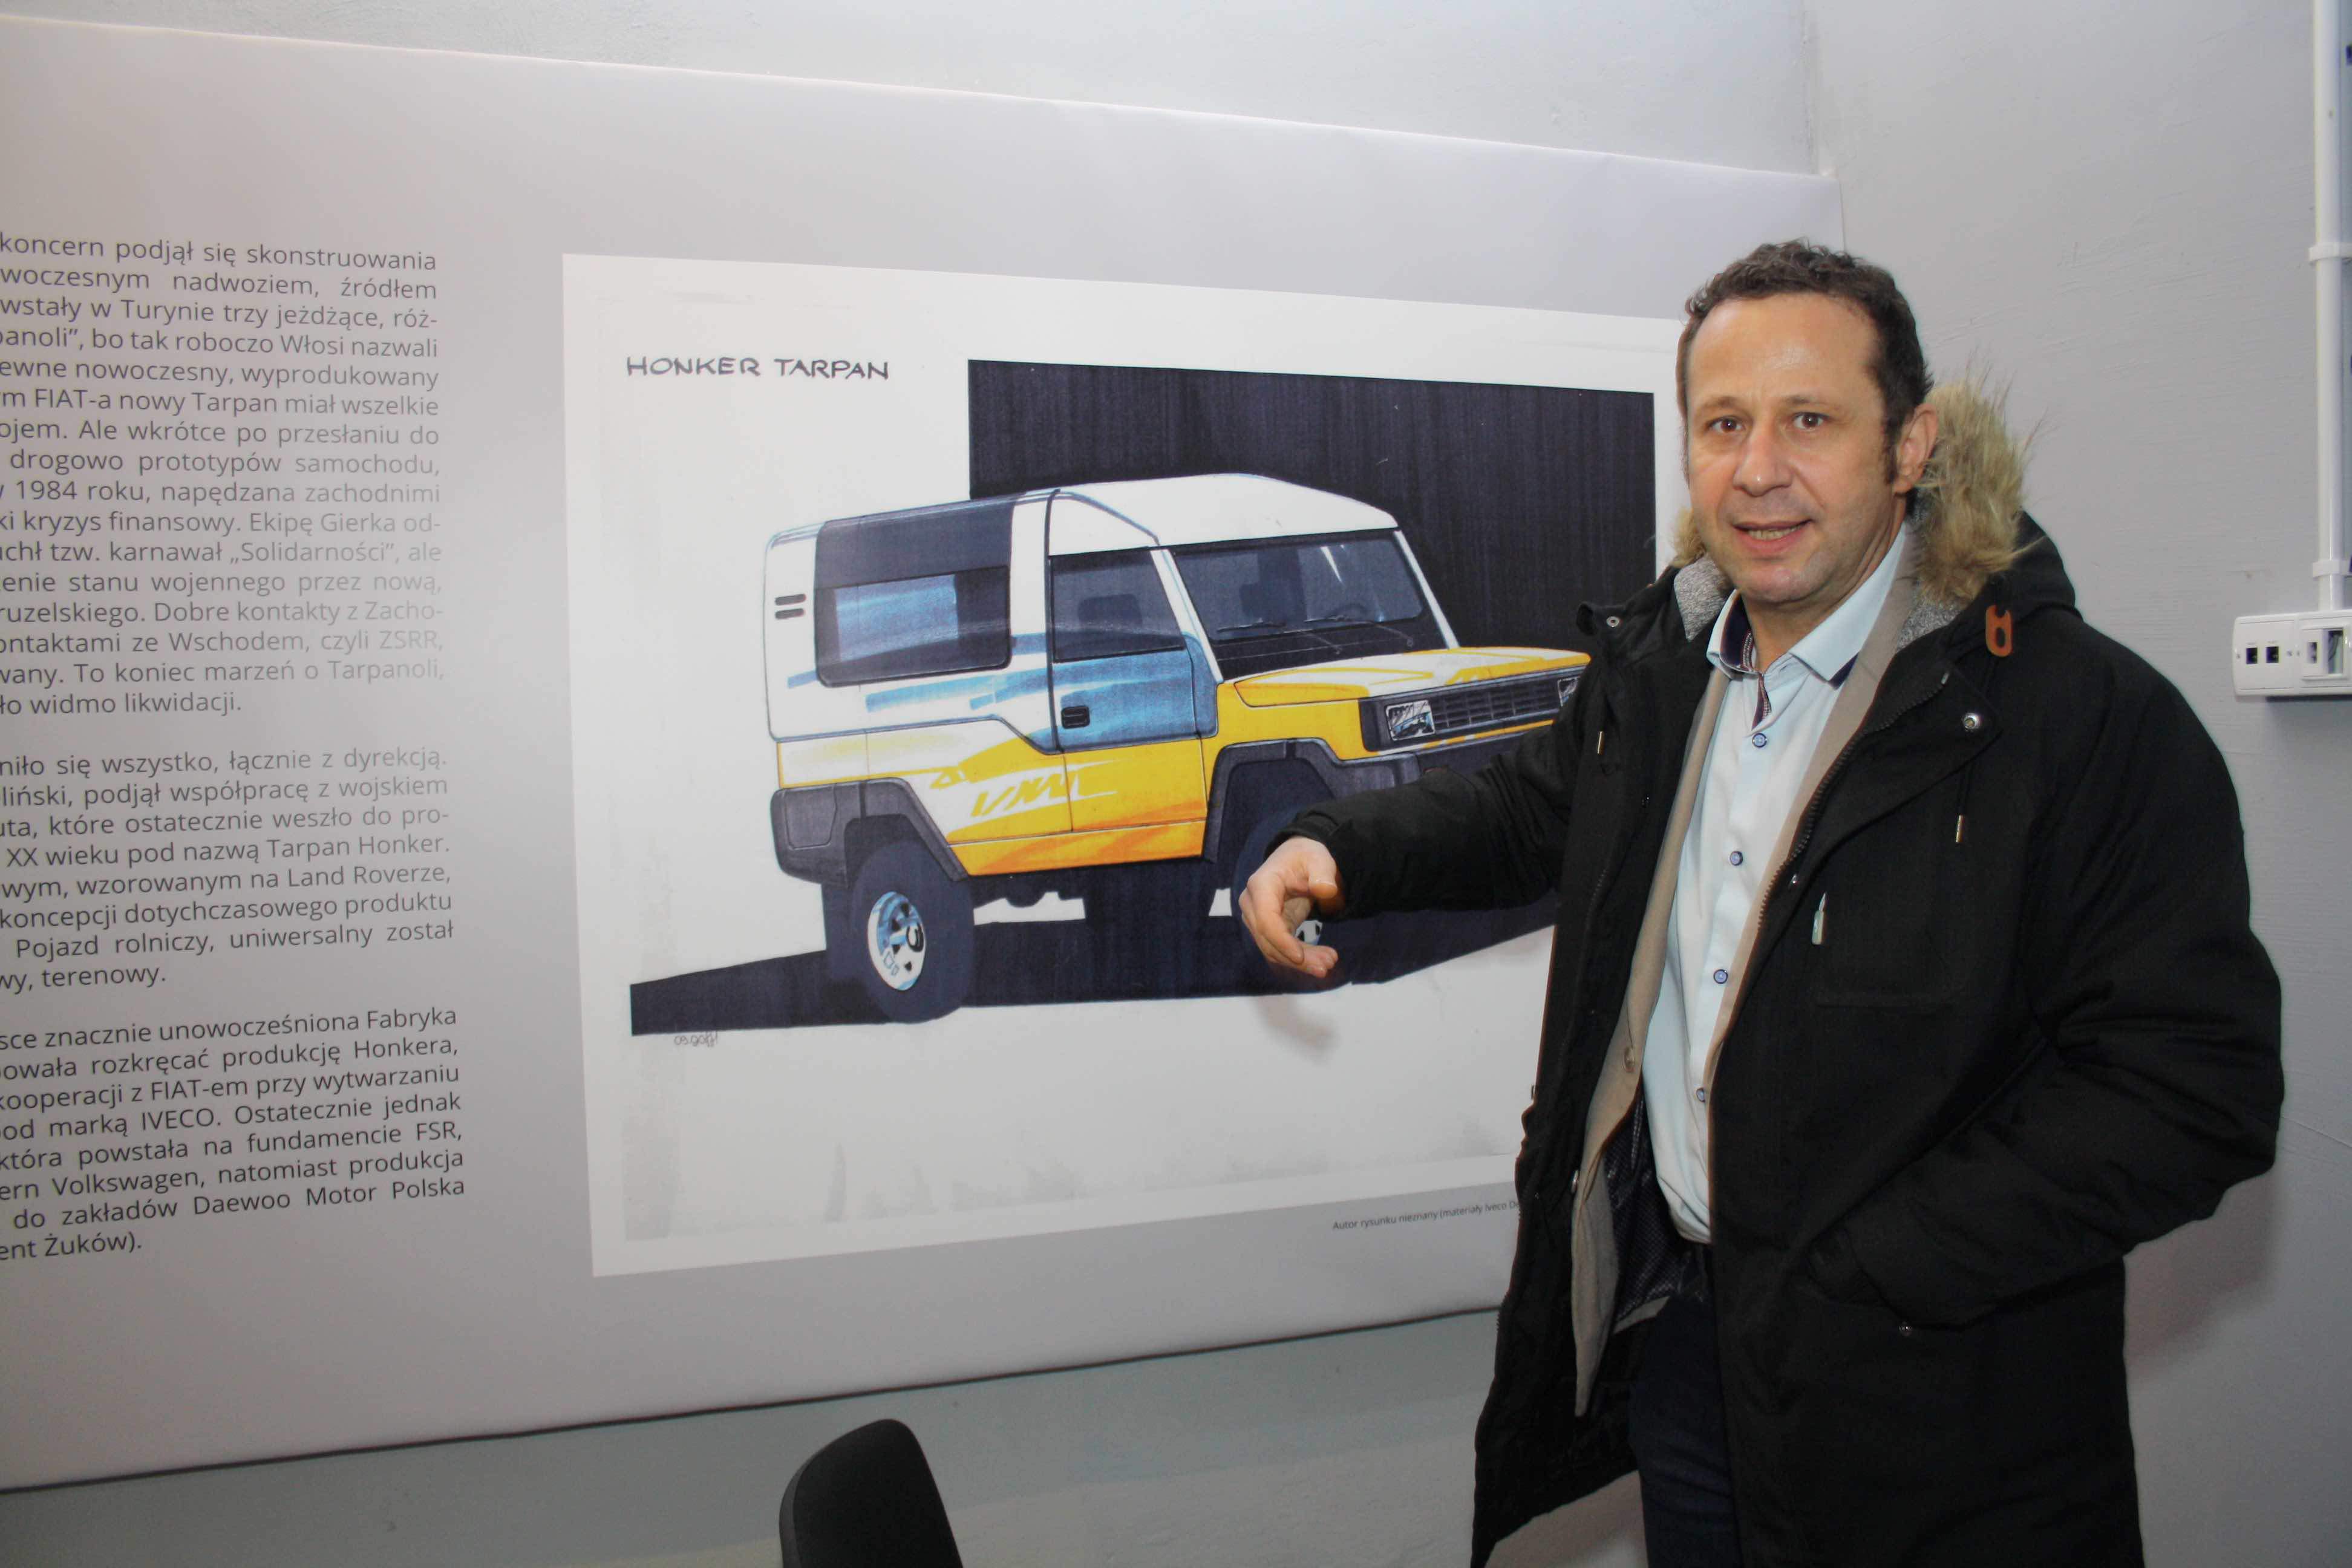 Gerard Radecki podaje, że na początku lat 90. powstała propozycja stylizacji Tarpana Honkera opracowana przez Iveco. Taki samochód miał być produkowany w Poznaniu i sprzedawany m.in. poprzez sieć Fiata